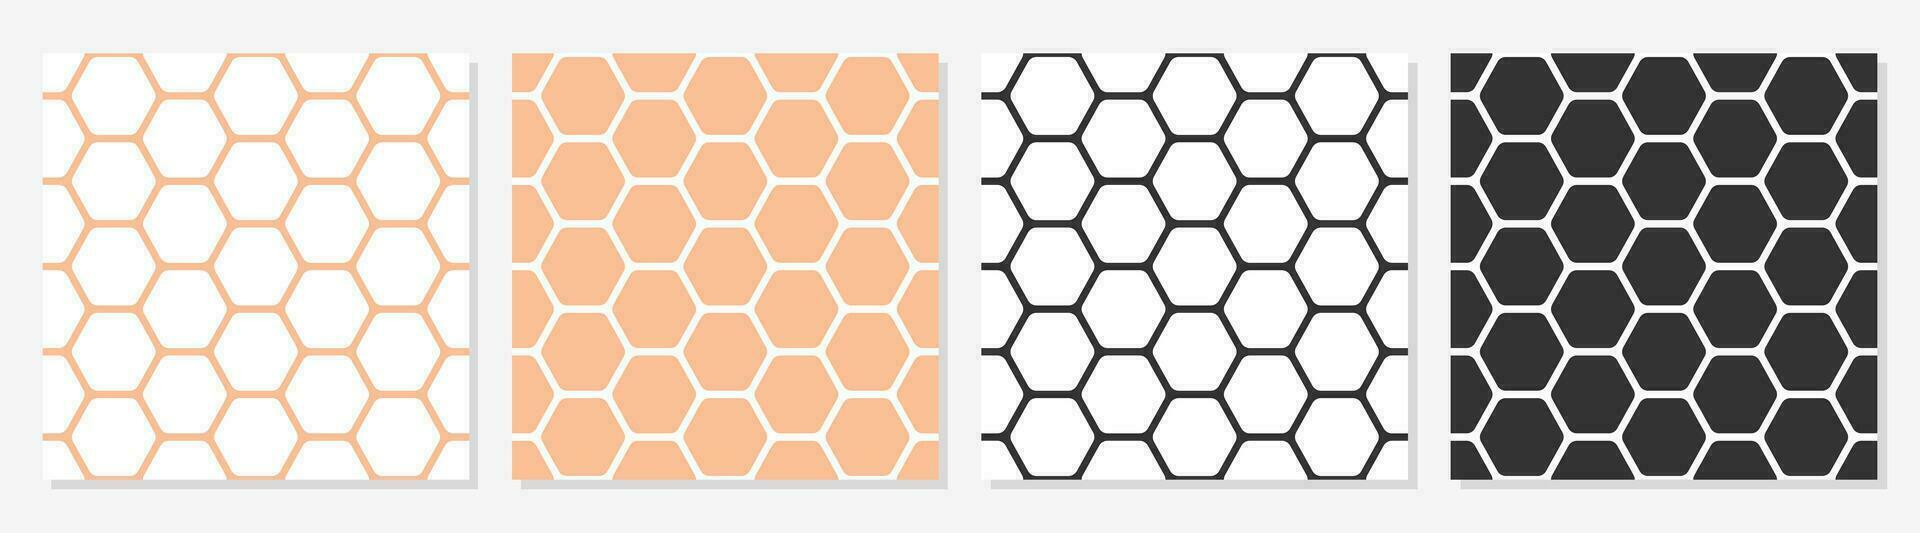 desatado colméia favo de mel padrão, hexagonal moda geométrico simetria projeto, padronizar para papel de parede, invólucro, tecido, vestuário, Produção, impressão, vetor ilustração